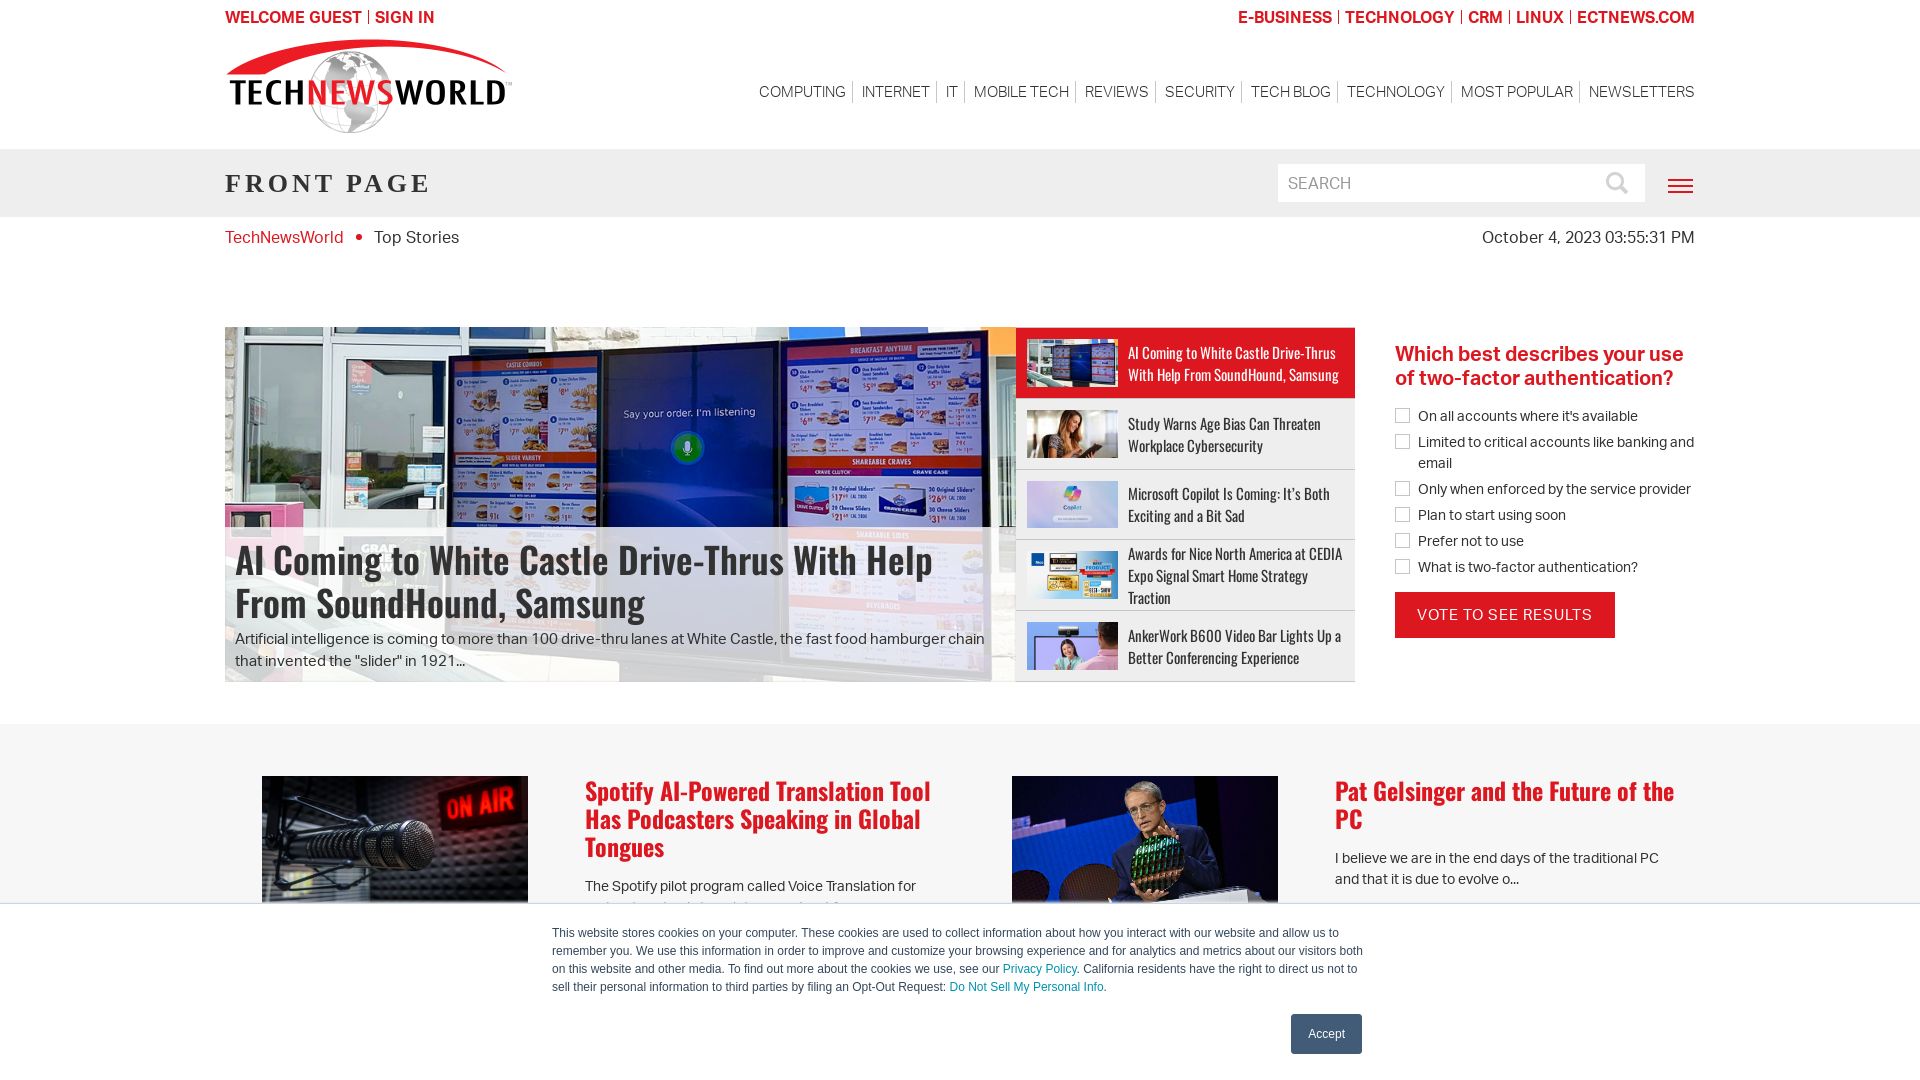 Website status technewsworld.com is   ONLINE